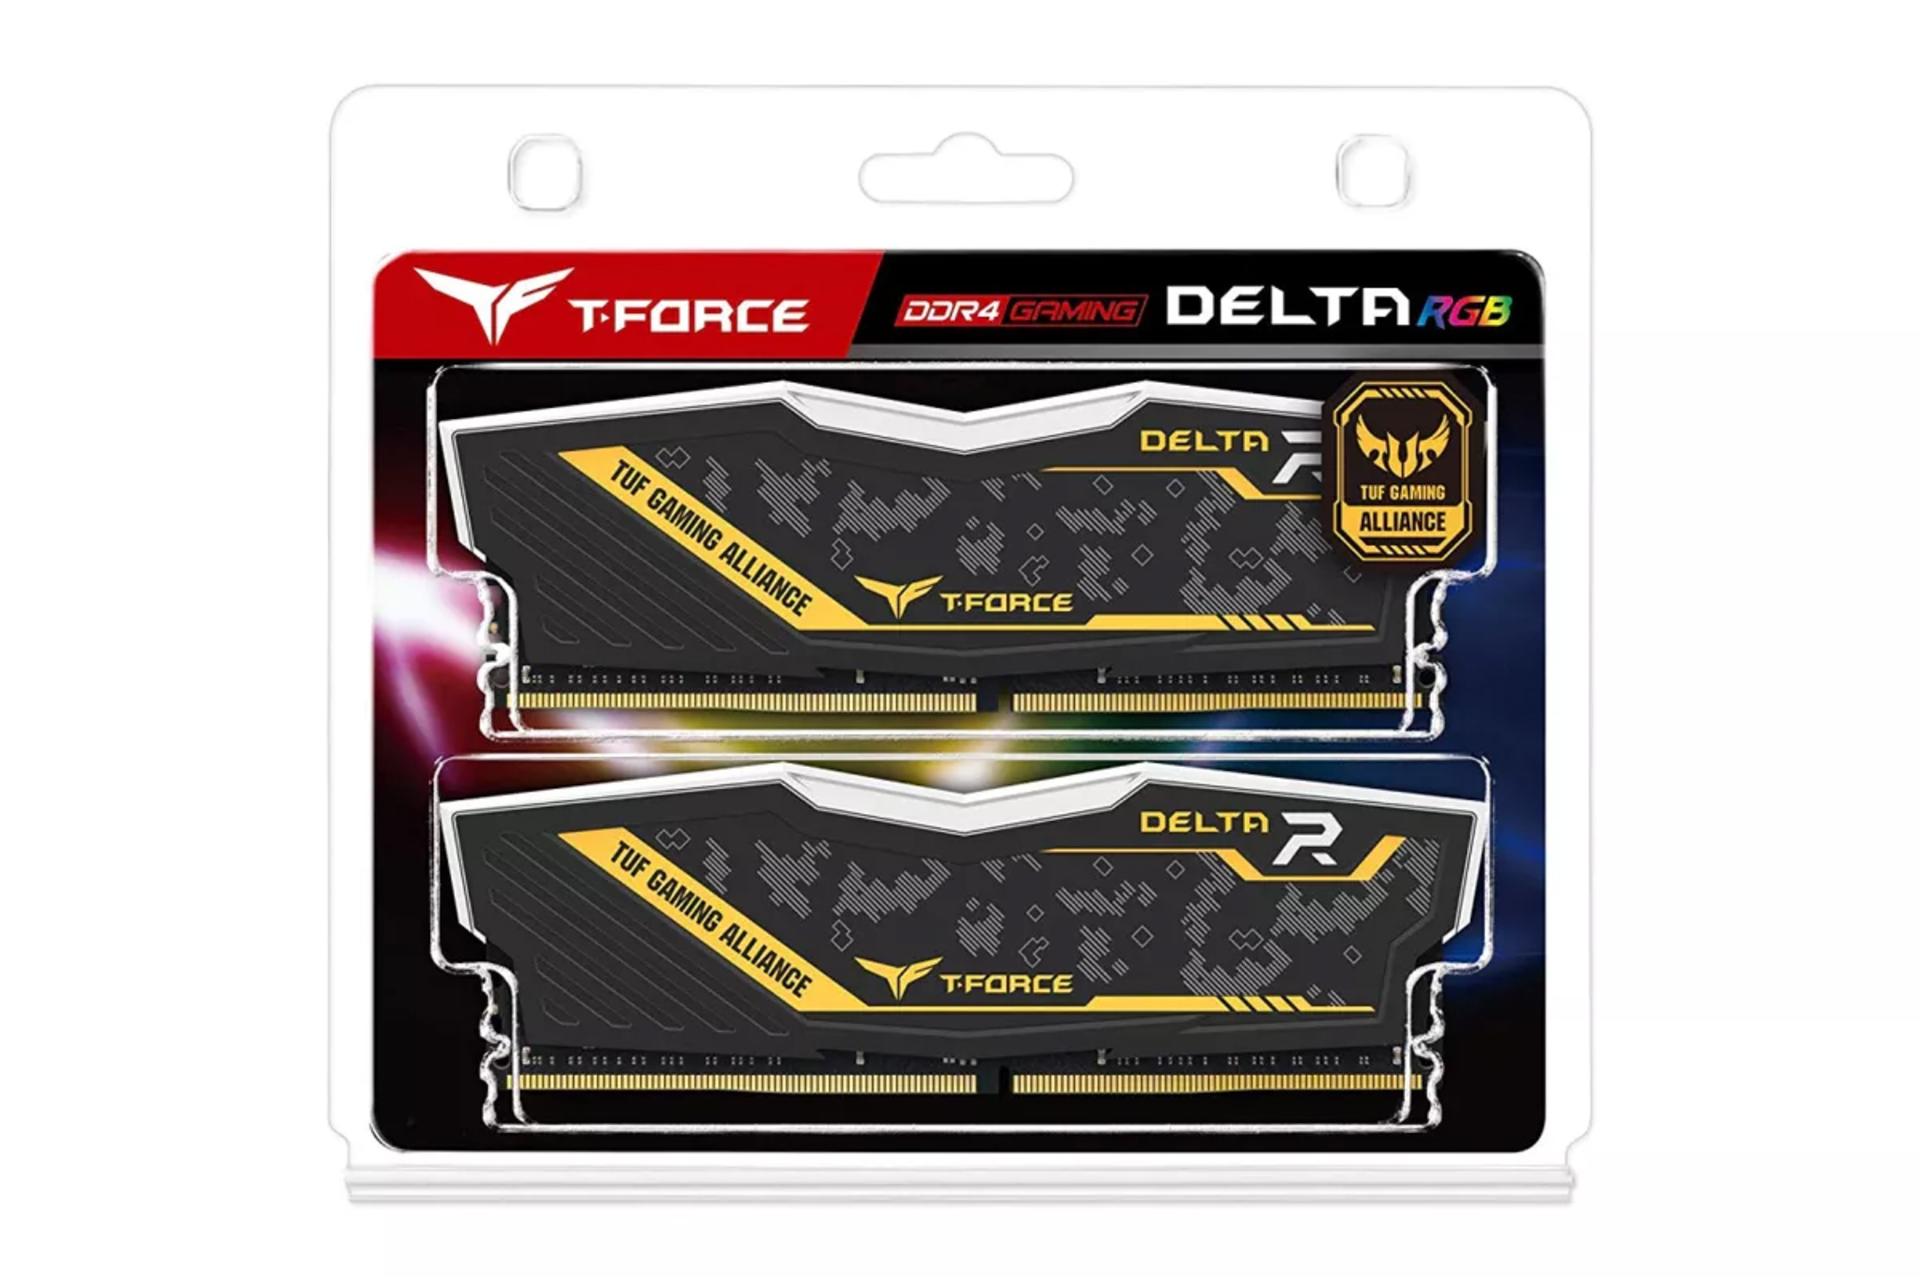 جعبه رم تیم گروپ T-FORCE DELTA TUF Gaming Alliance RGB ظرفیت 16 گیگابایت (2x8) از نوع DDR4-3200